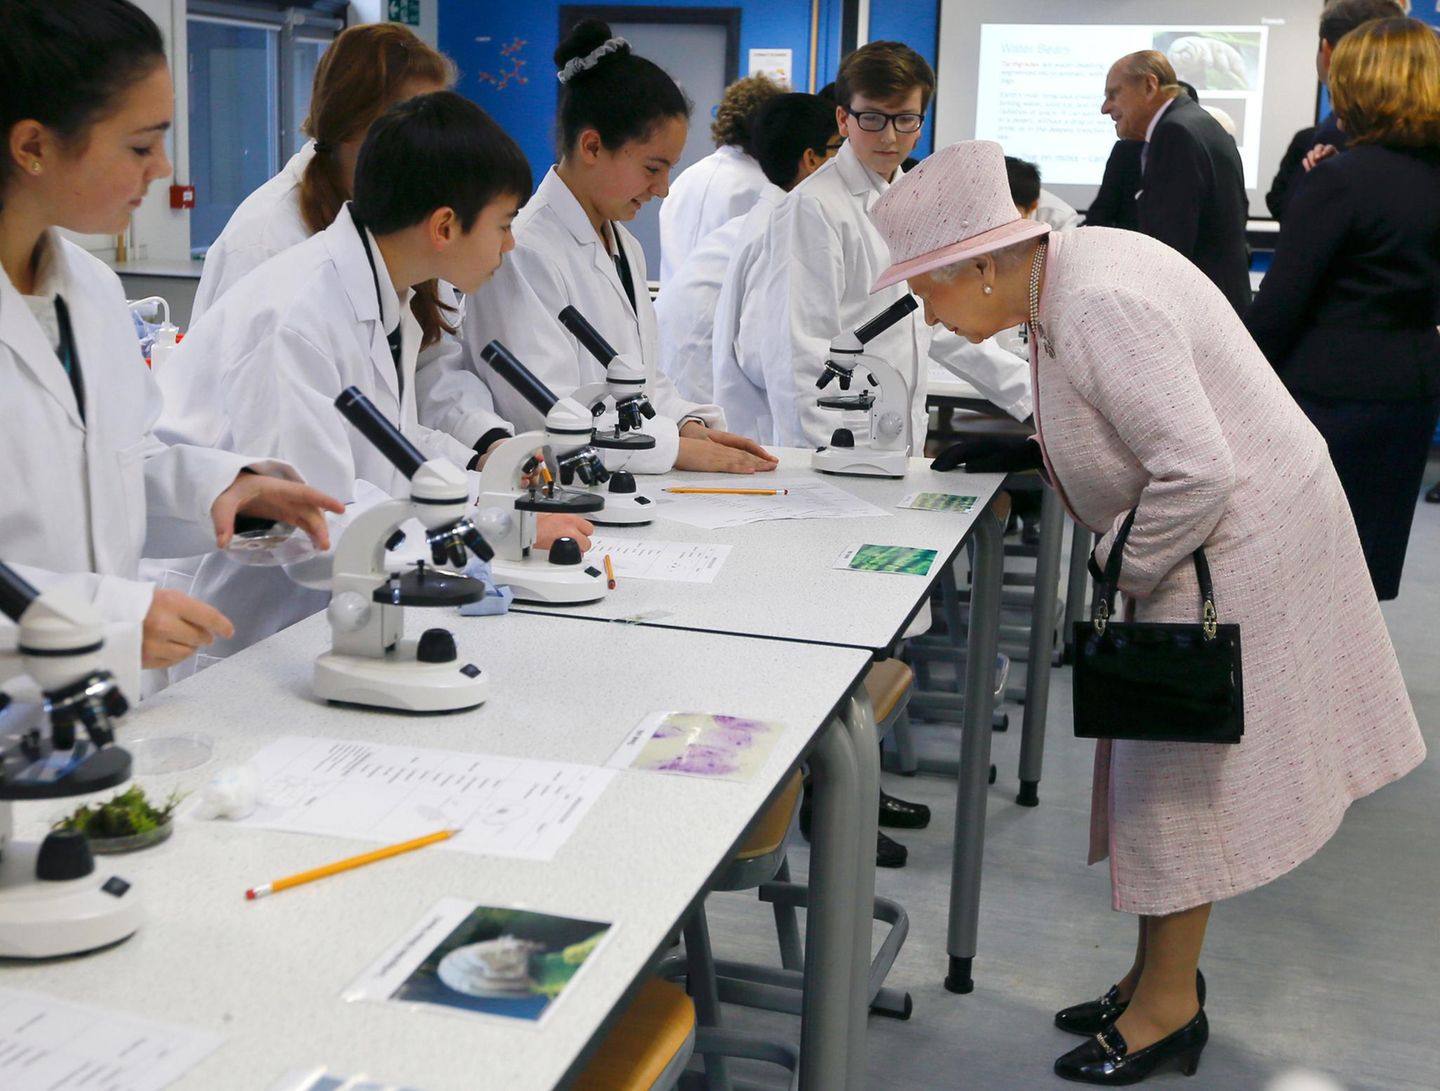 28. November 2014: Mit 88 Jahren geht Queen Elizabeth wieder zur Schule. Im "Holyport College" in Maidenhead nimmt sie an einer Physikstunde teil und schaut sich dabei etwas unter dem Mikroskop genauer an.